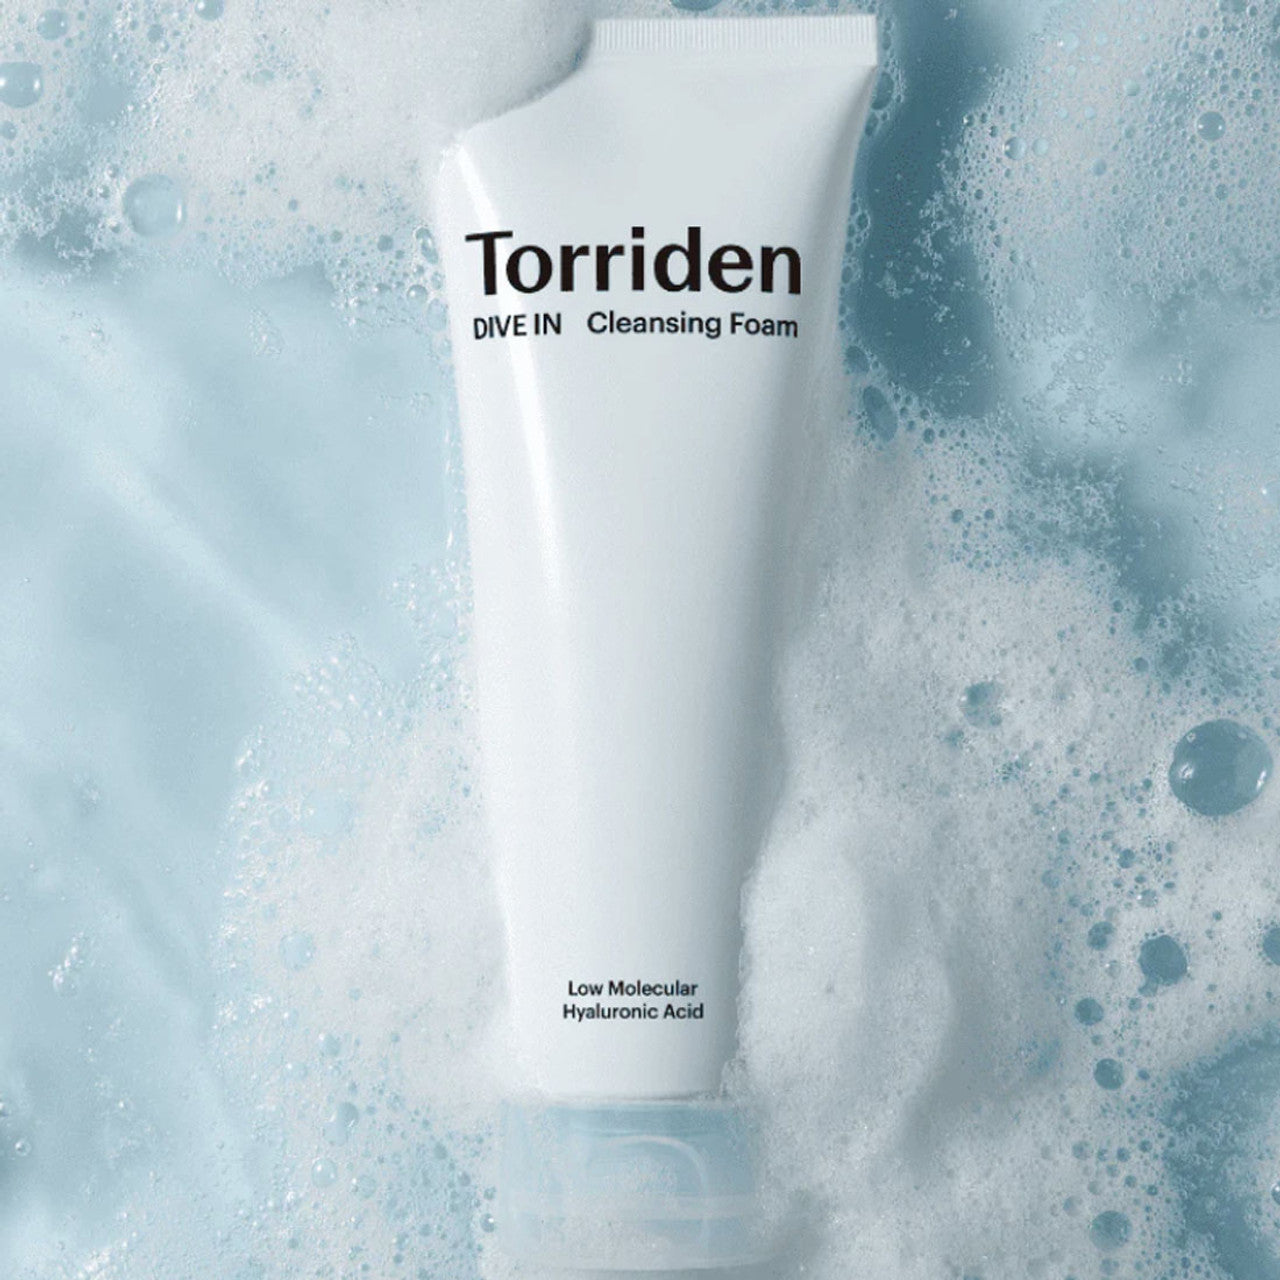 Dive In Cleansing Foam by Torriden